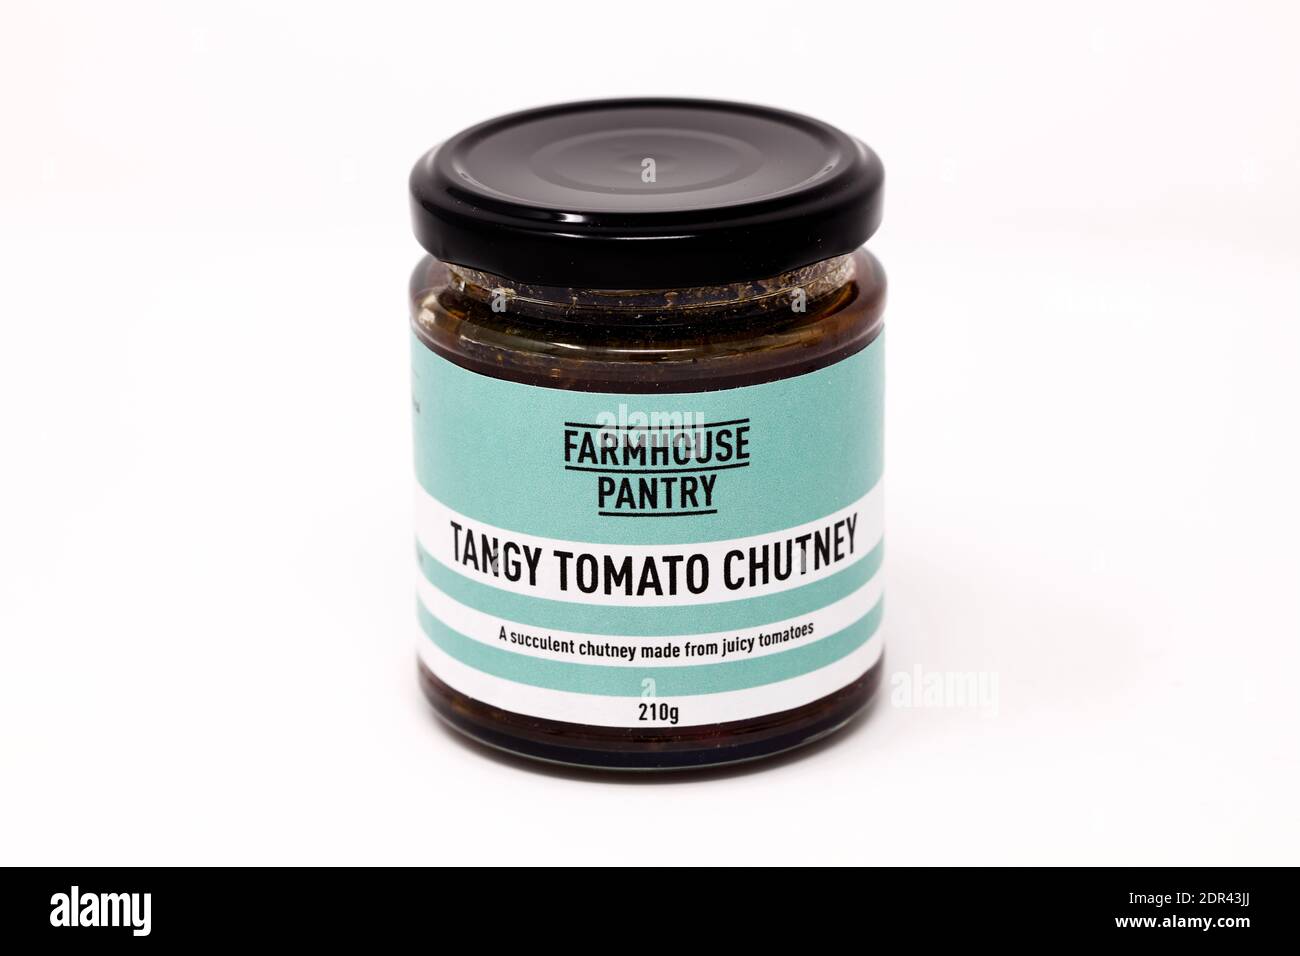 Farmhouse Pantry - Tangy Tomato Chutney Stock Photo